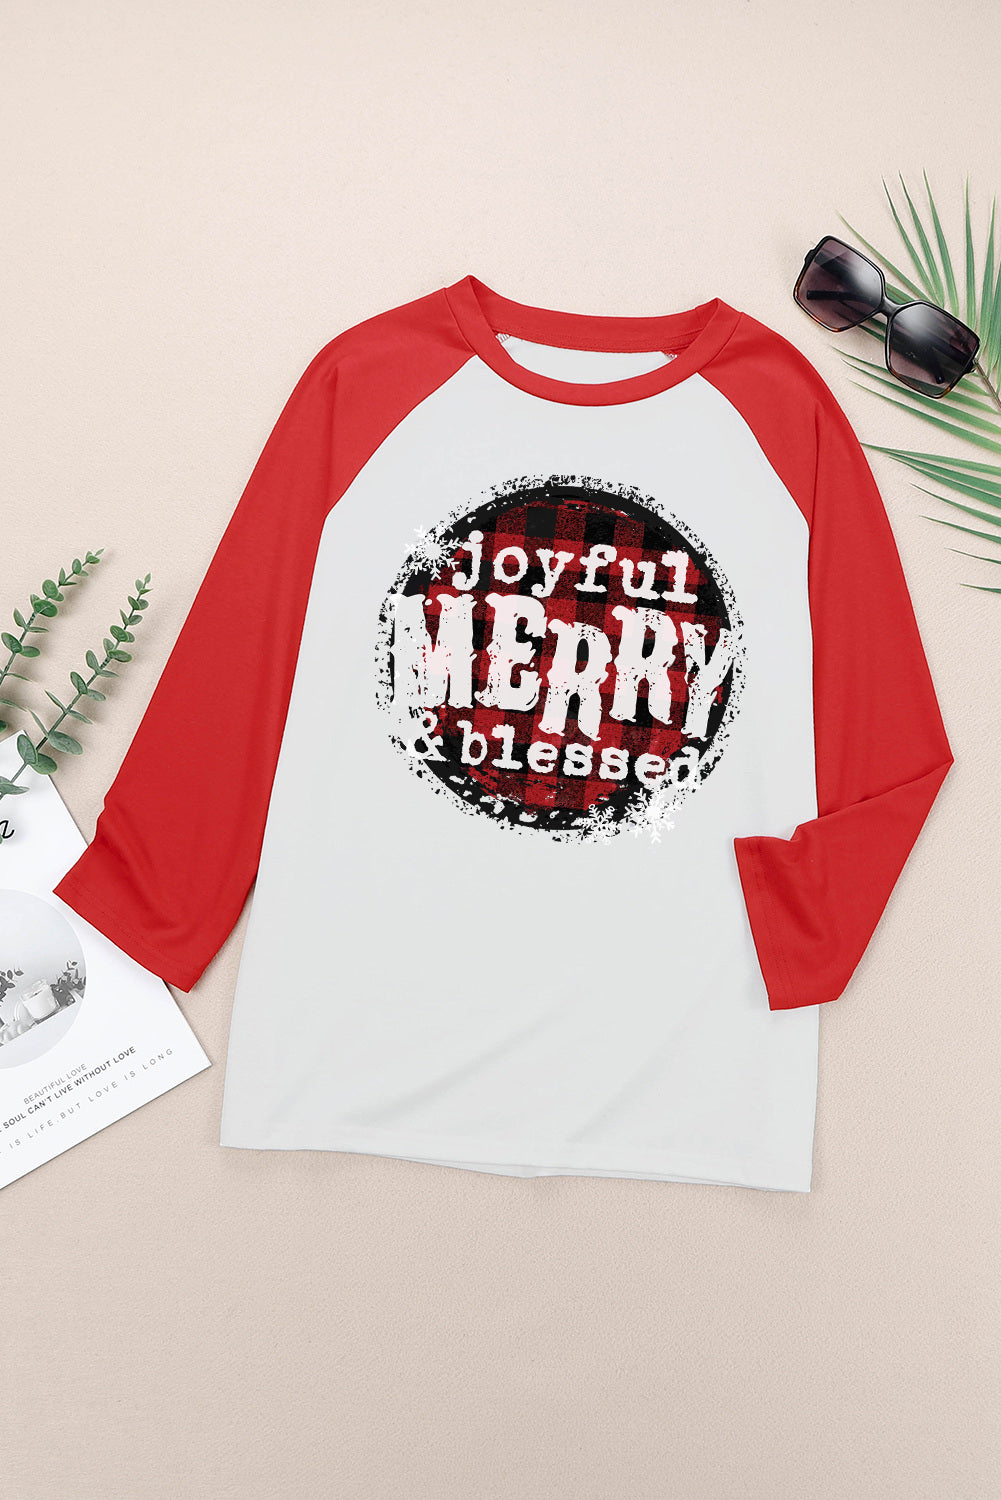 Sweats de Noël Joyful Merry &amp; Blessed Christmas T-shirts graphiques de vacances Tops